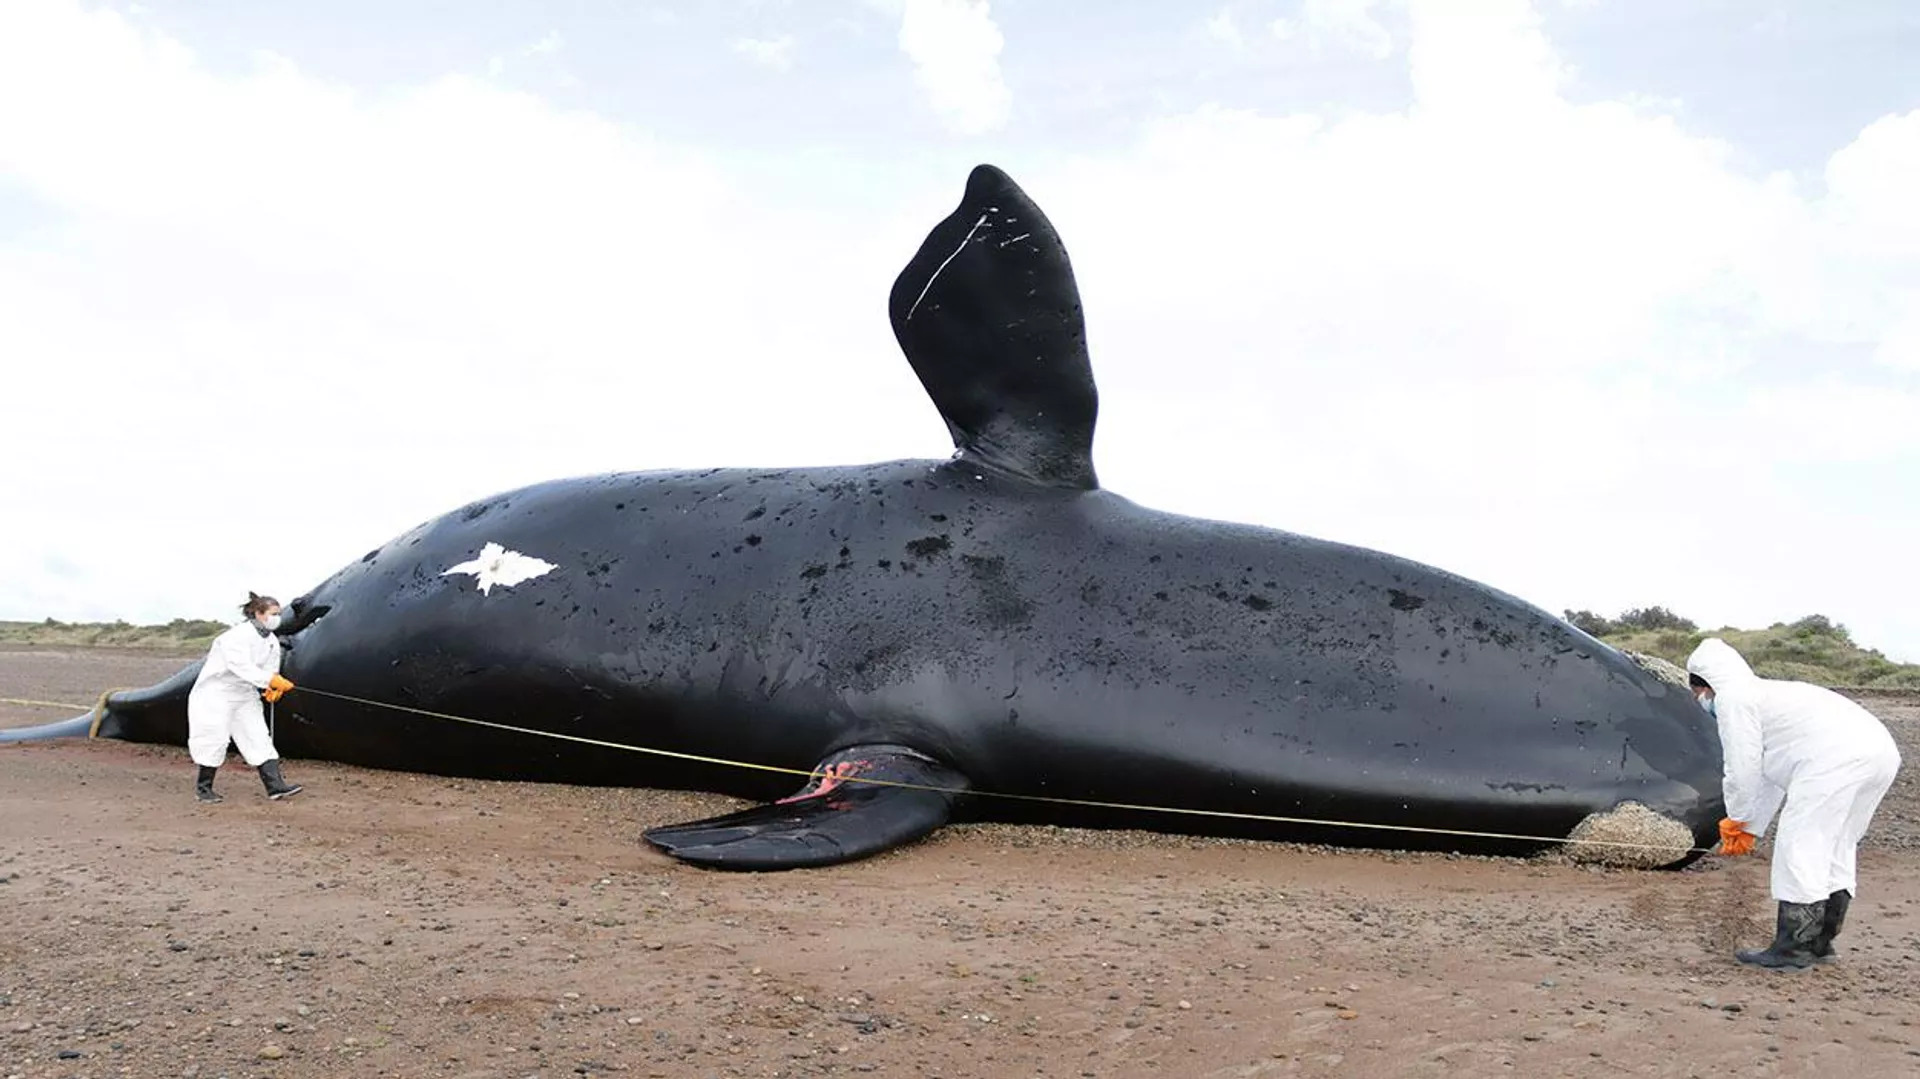  Siguen apareciendo ballenas muertas en las costas argentinas | Fotos